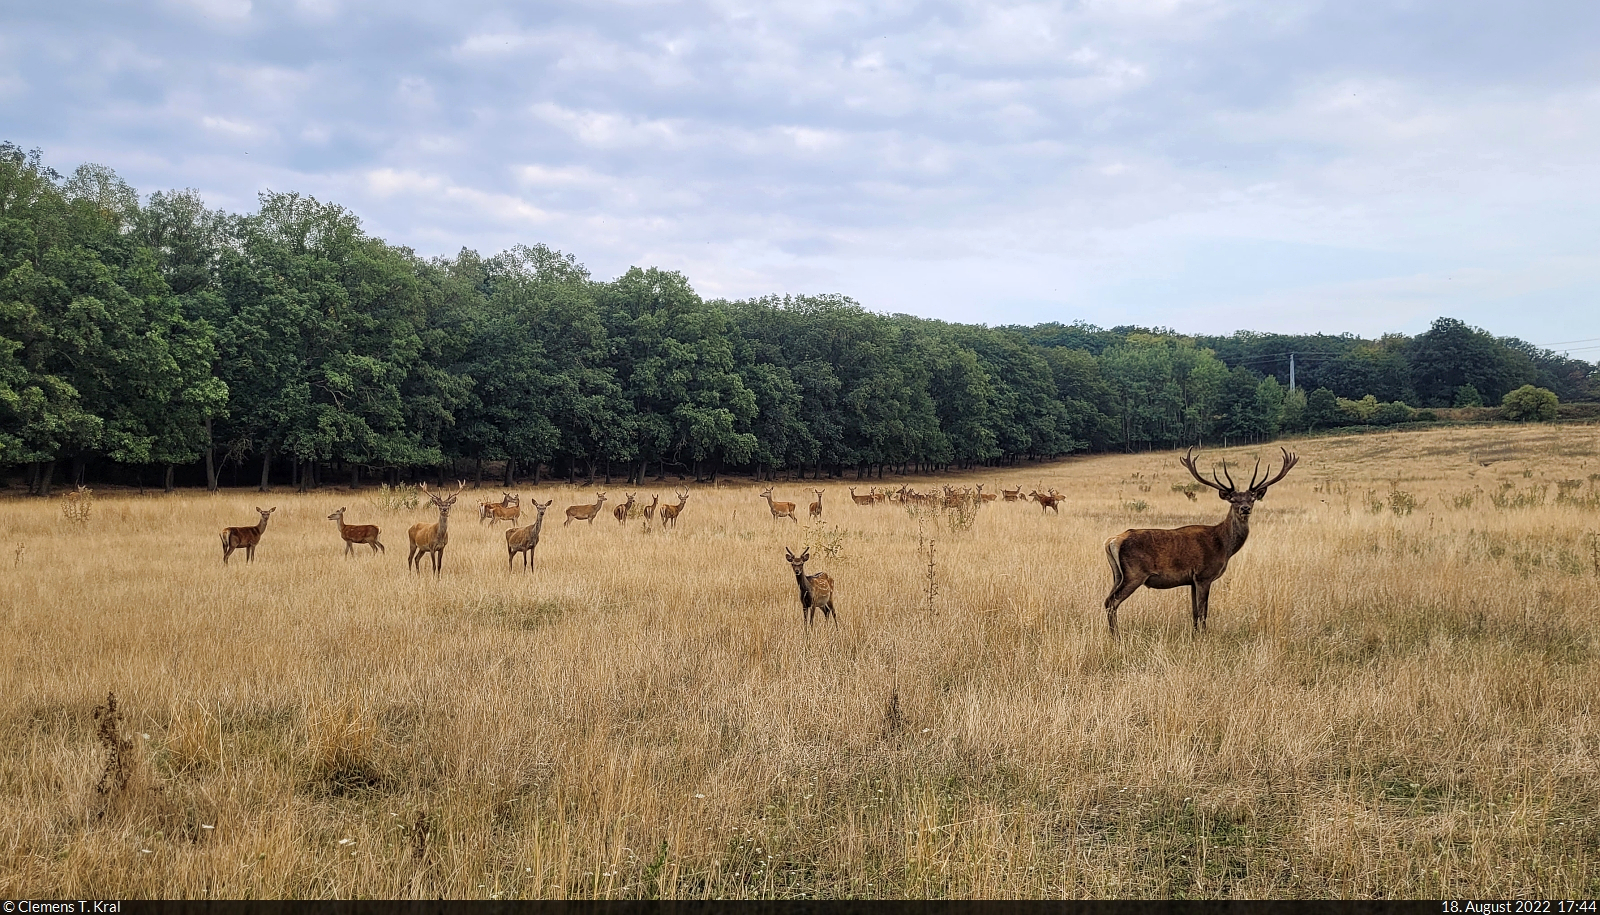 So viele Rehe und Hirsche auf einmal sieht man selten. Dieser Blick gelang durch einen Zaun am Othaler Wald, einem Naturschutzgebiet sdlich von Riestedt (Sangerhausen).

🕓 18.8.2022 | 17:44 Uhr